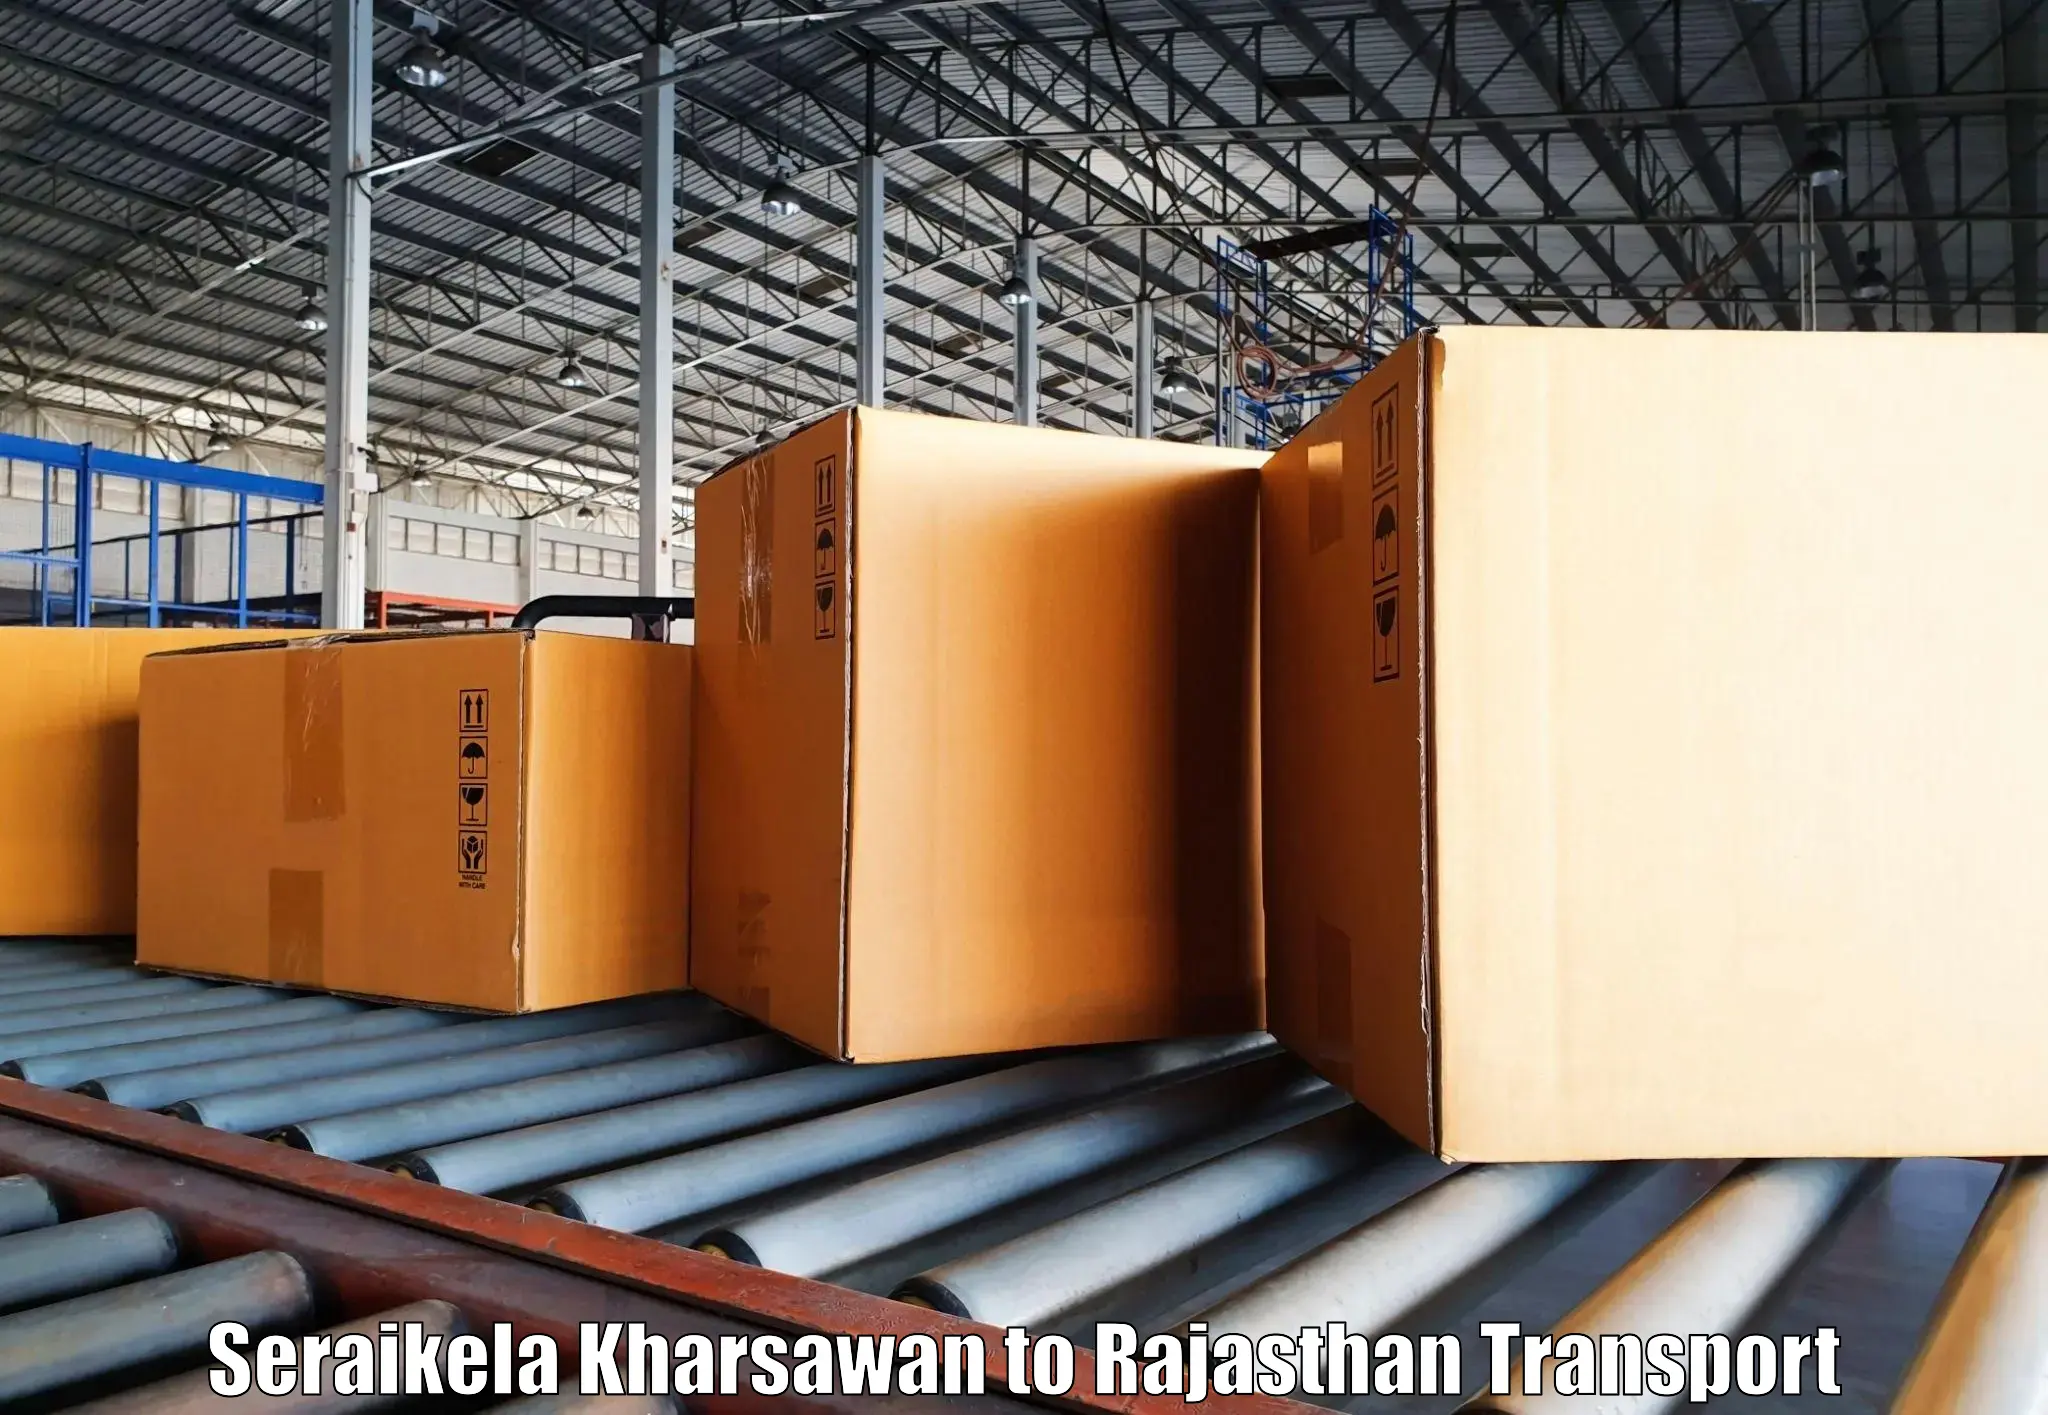 Shipping partner Seraikela Kharsawan to Bhilwara